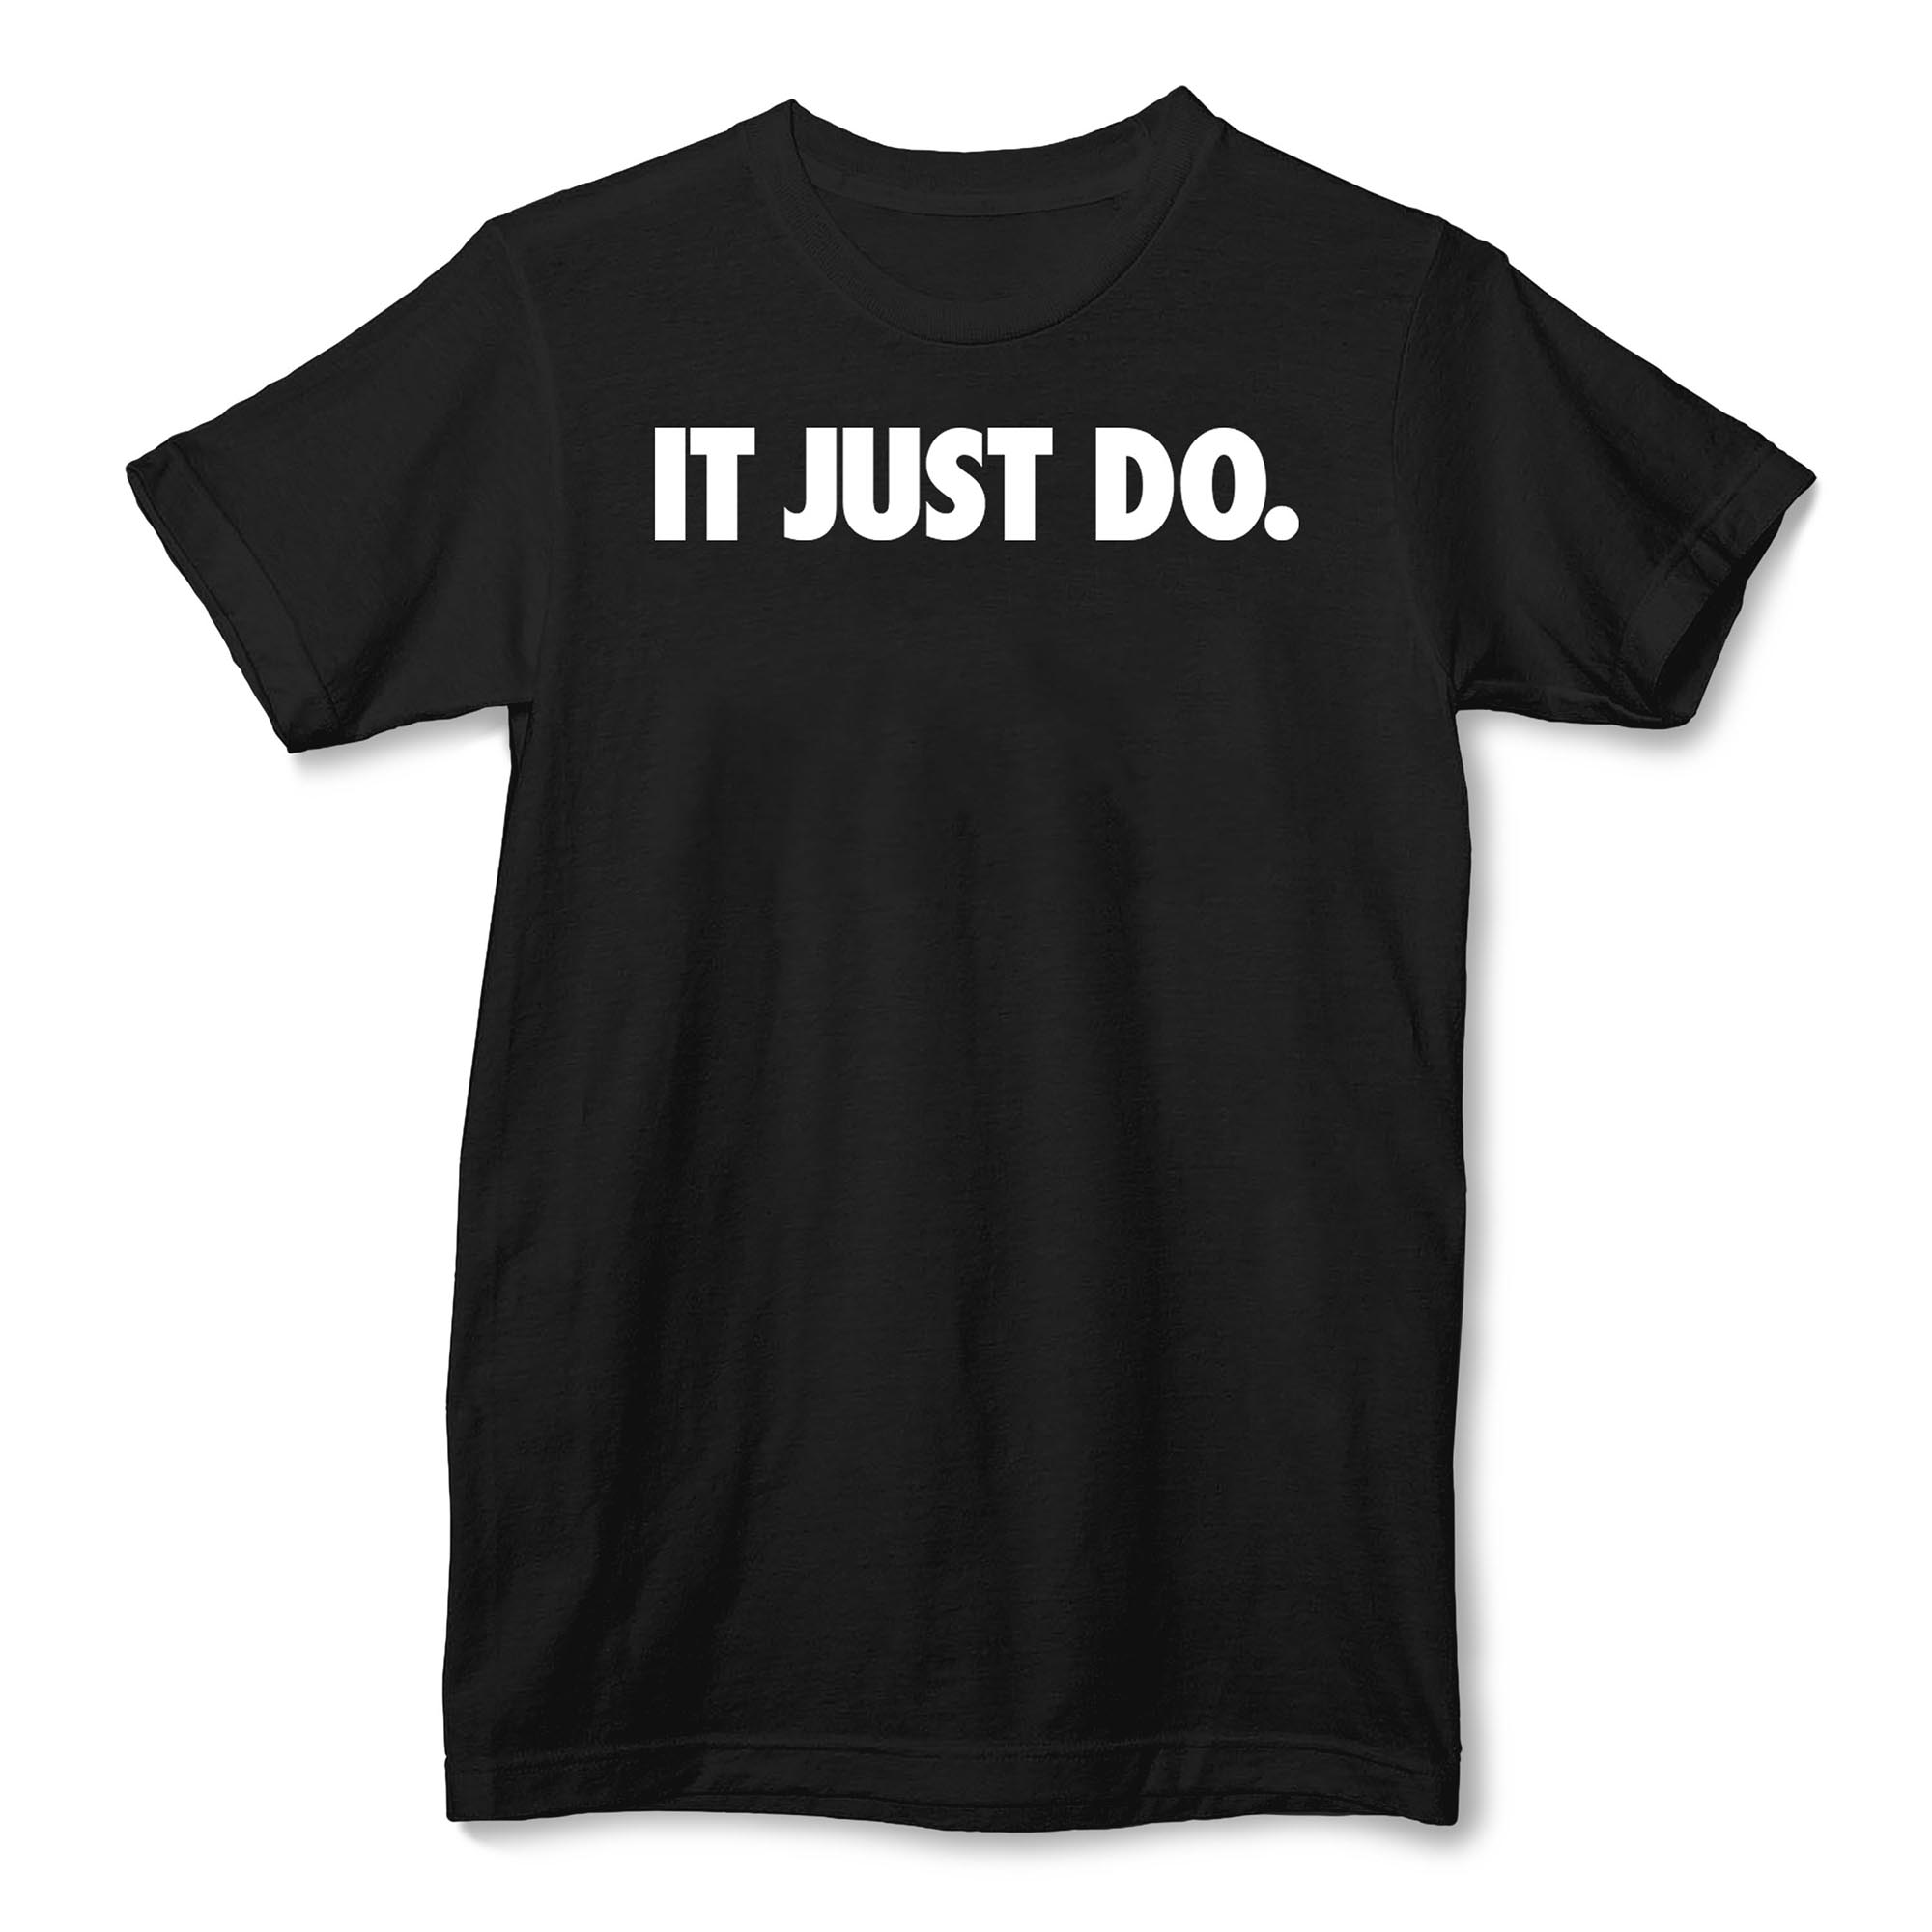 just do it tee shirt